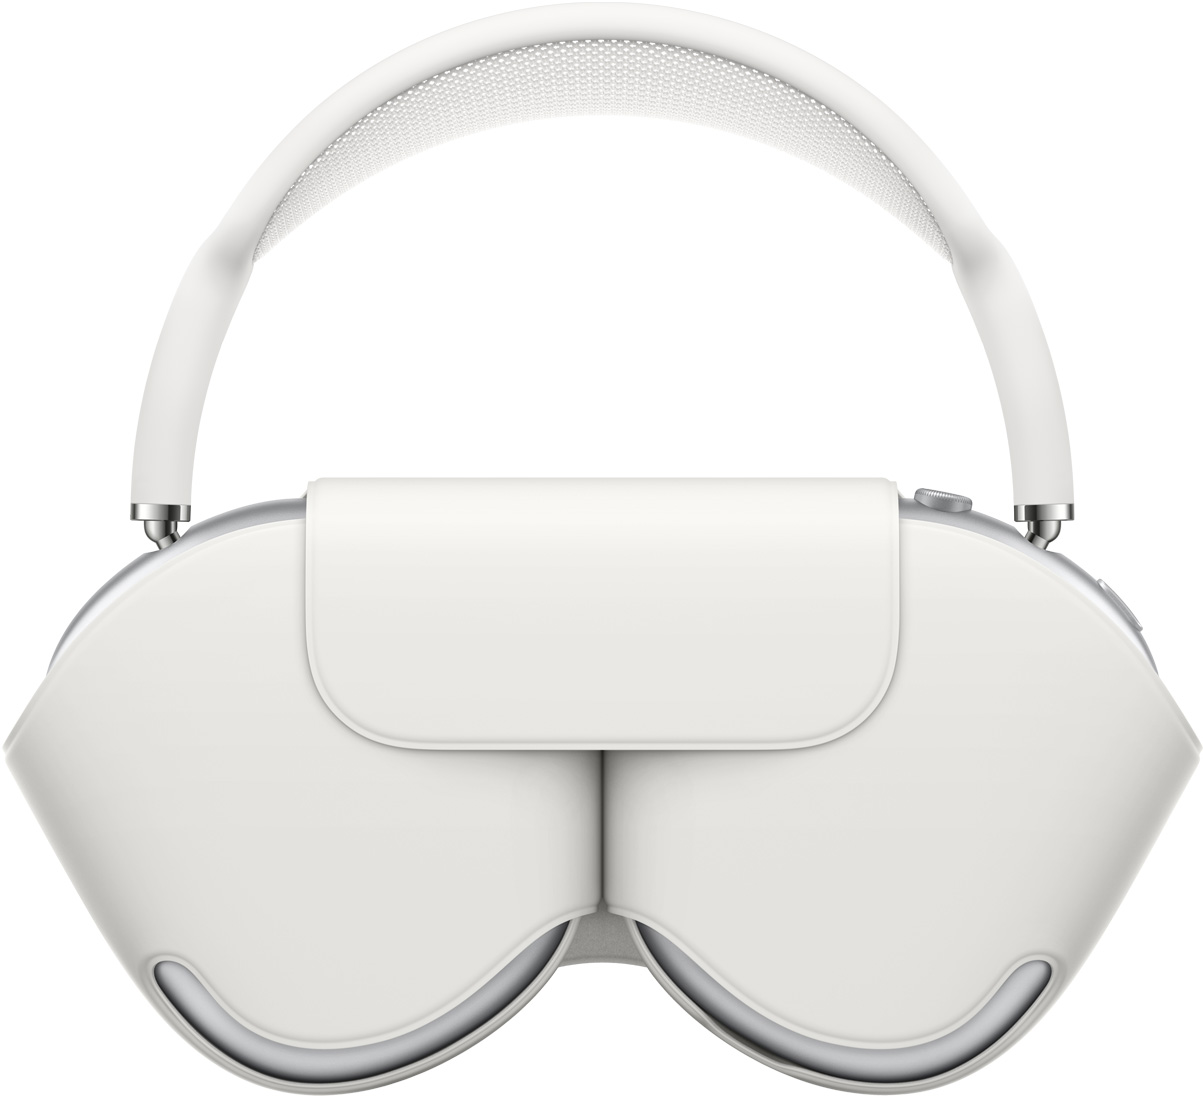 Fones de AirPods Max prateados protegidos por um Smart Case branco combinando. Com os fones guardados, o arco se estende por cima do estojo.